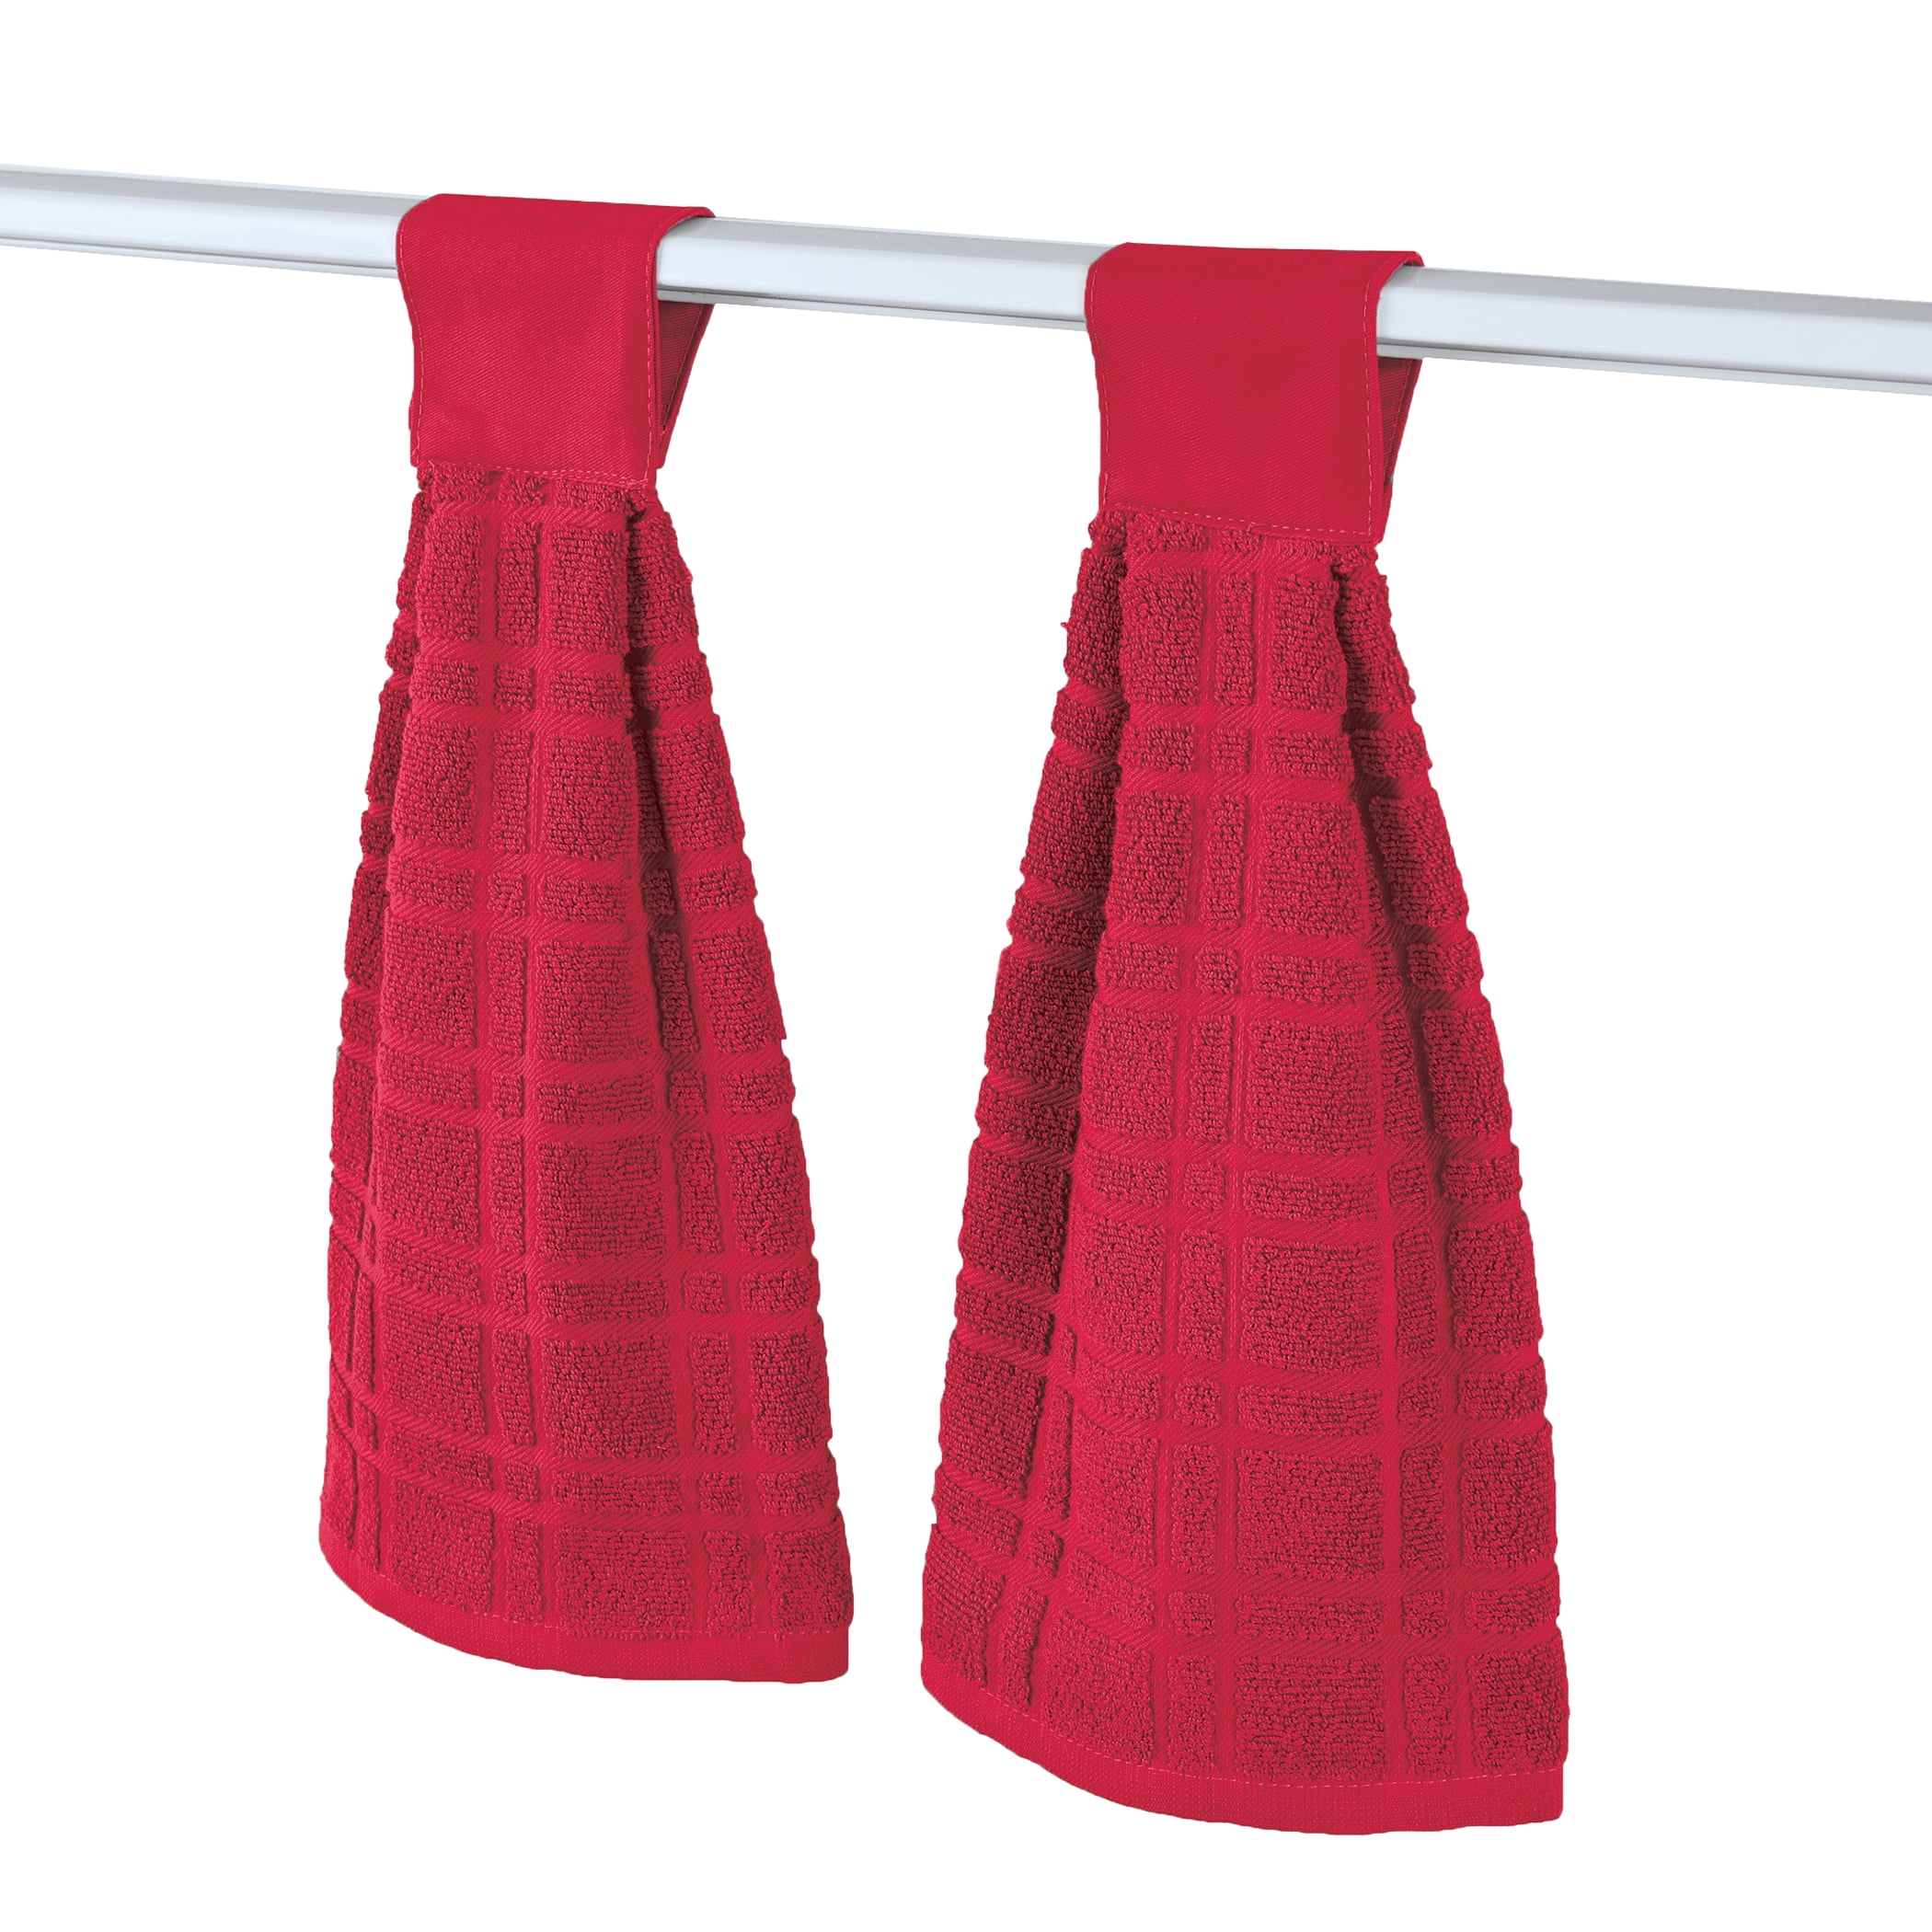 Golden Rabbit Cotton Swirl Kitchen Towels Set of 2 - Red